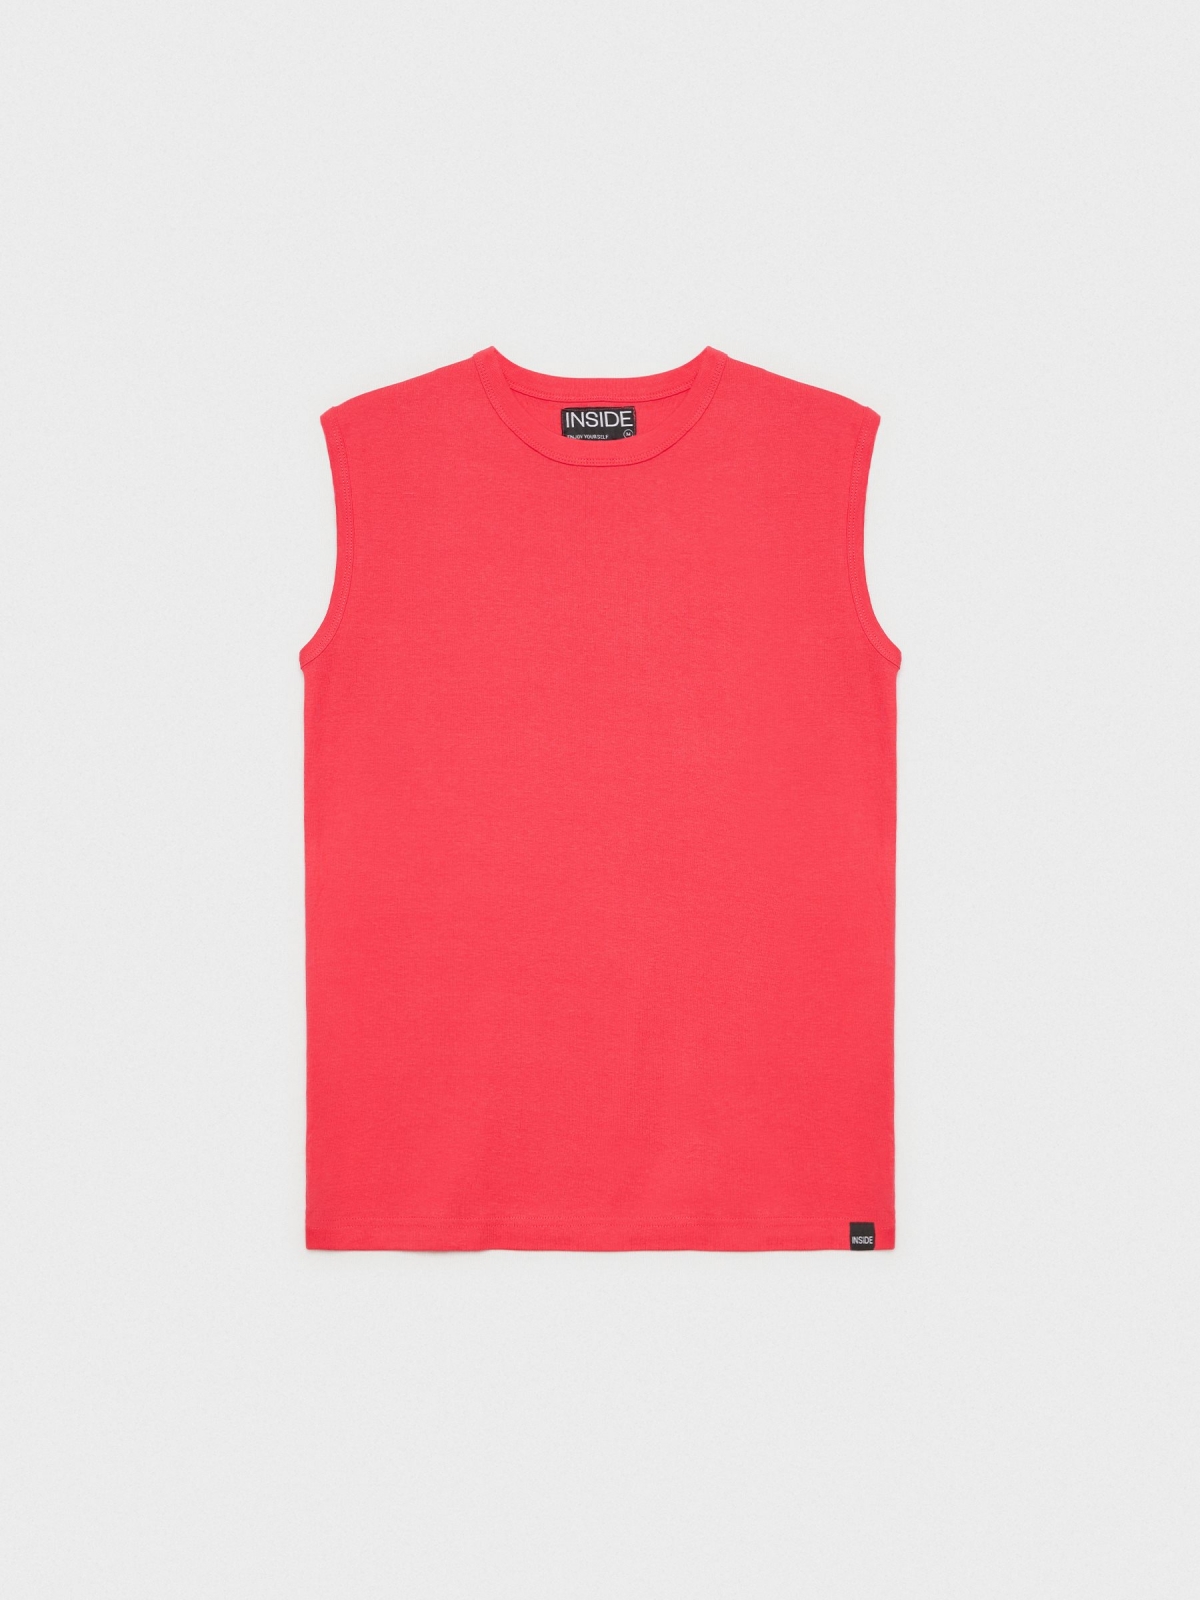  T-shirt básica sem mangas vermelho